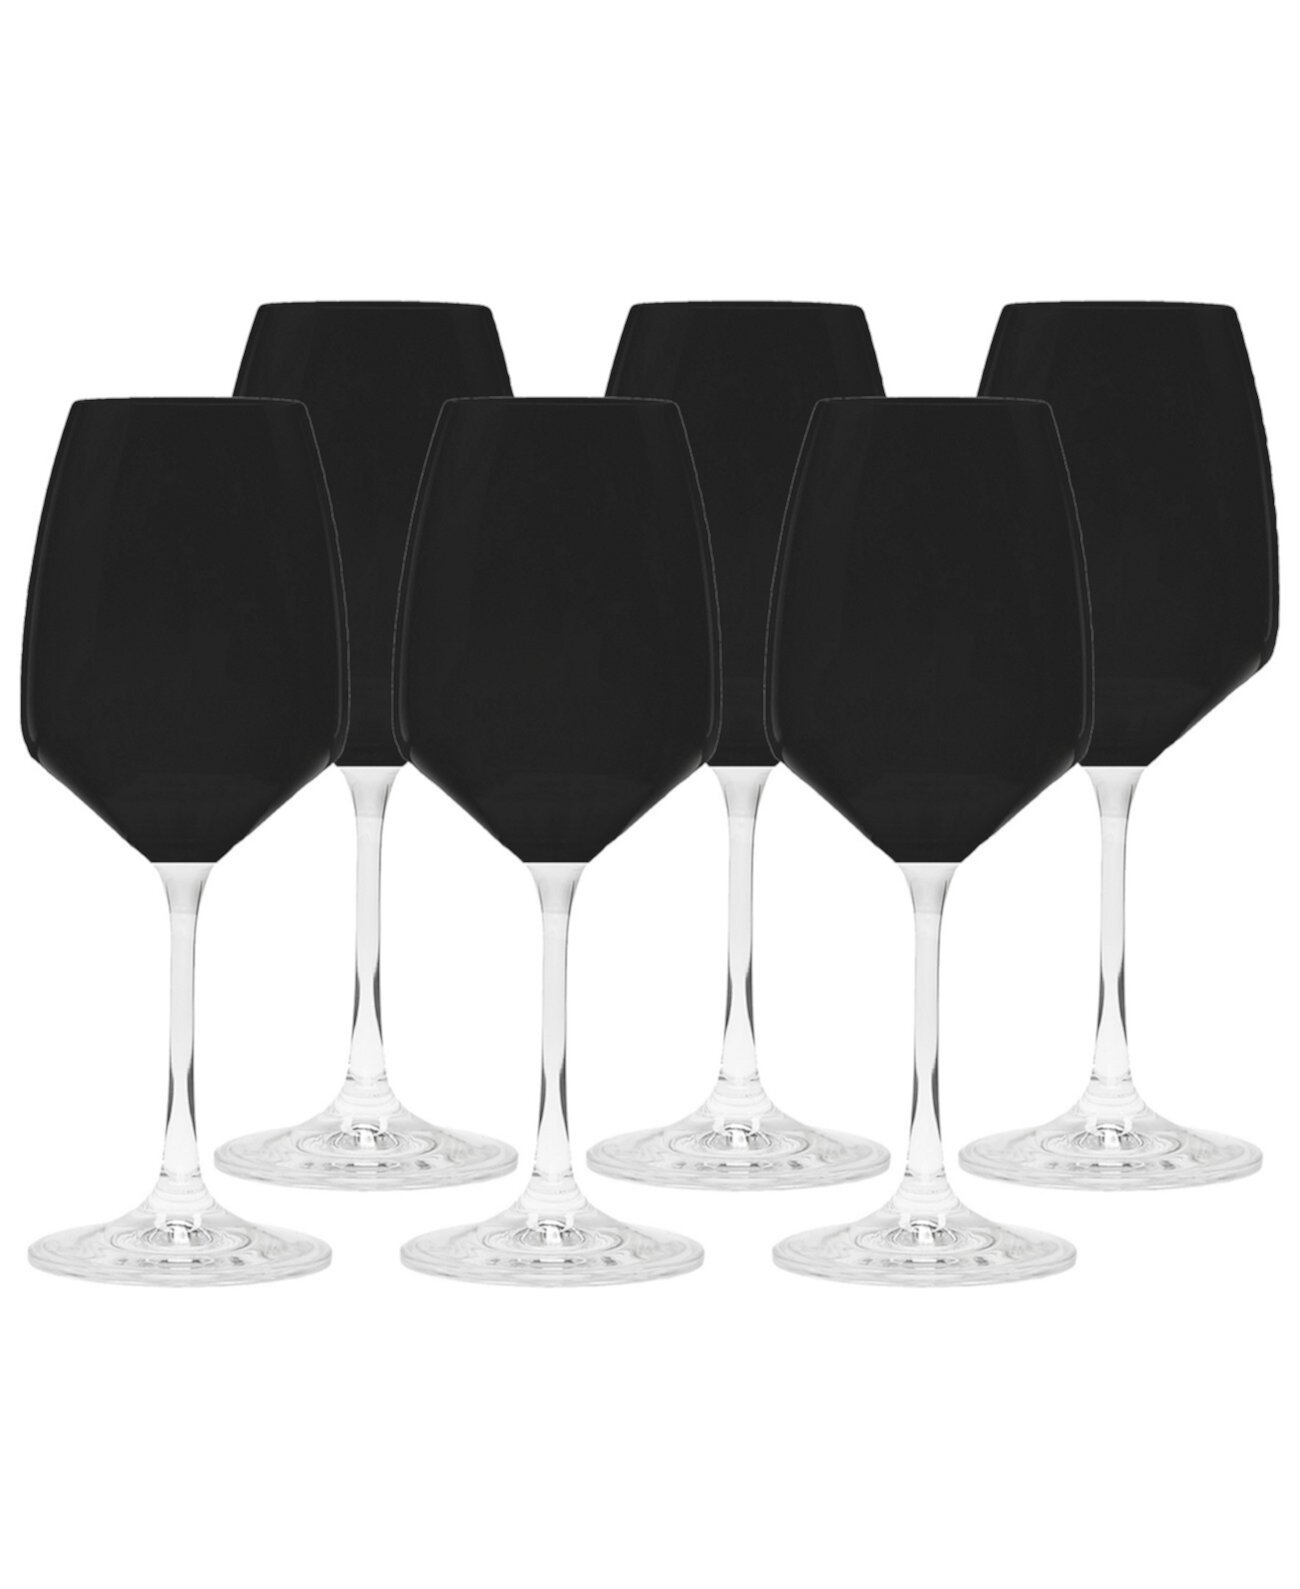 Бокалы для черного вина на ножке, набор из 6 шт. Classic Touch